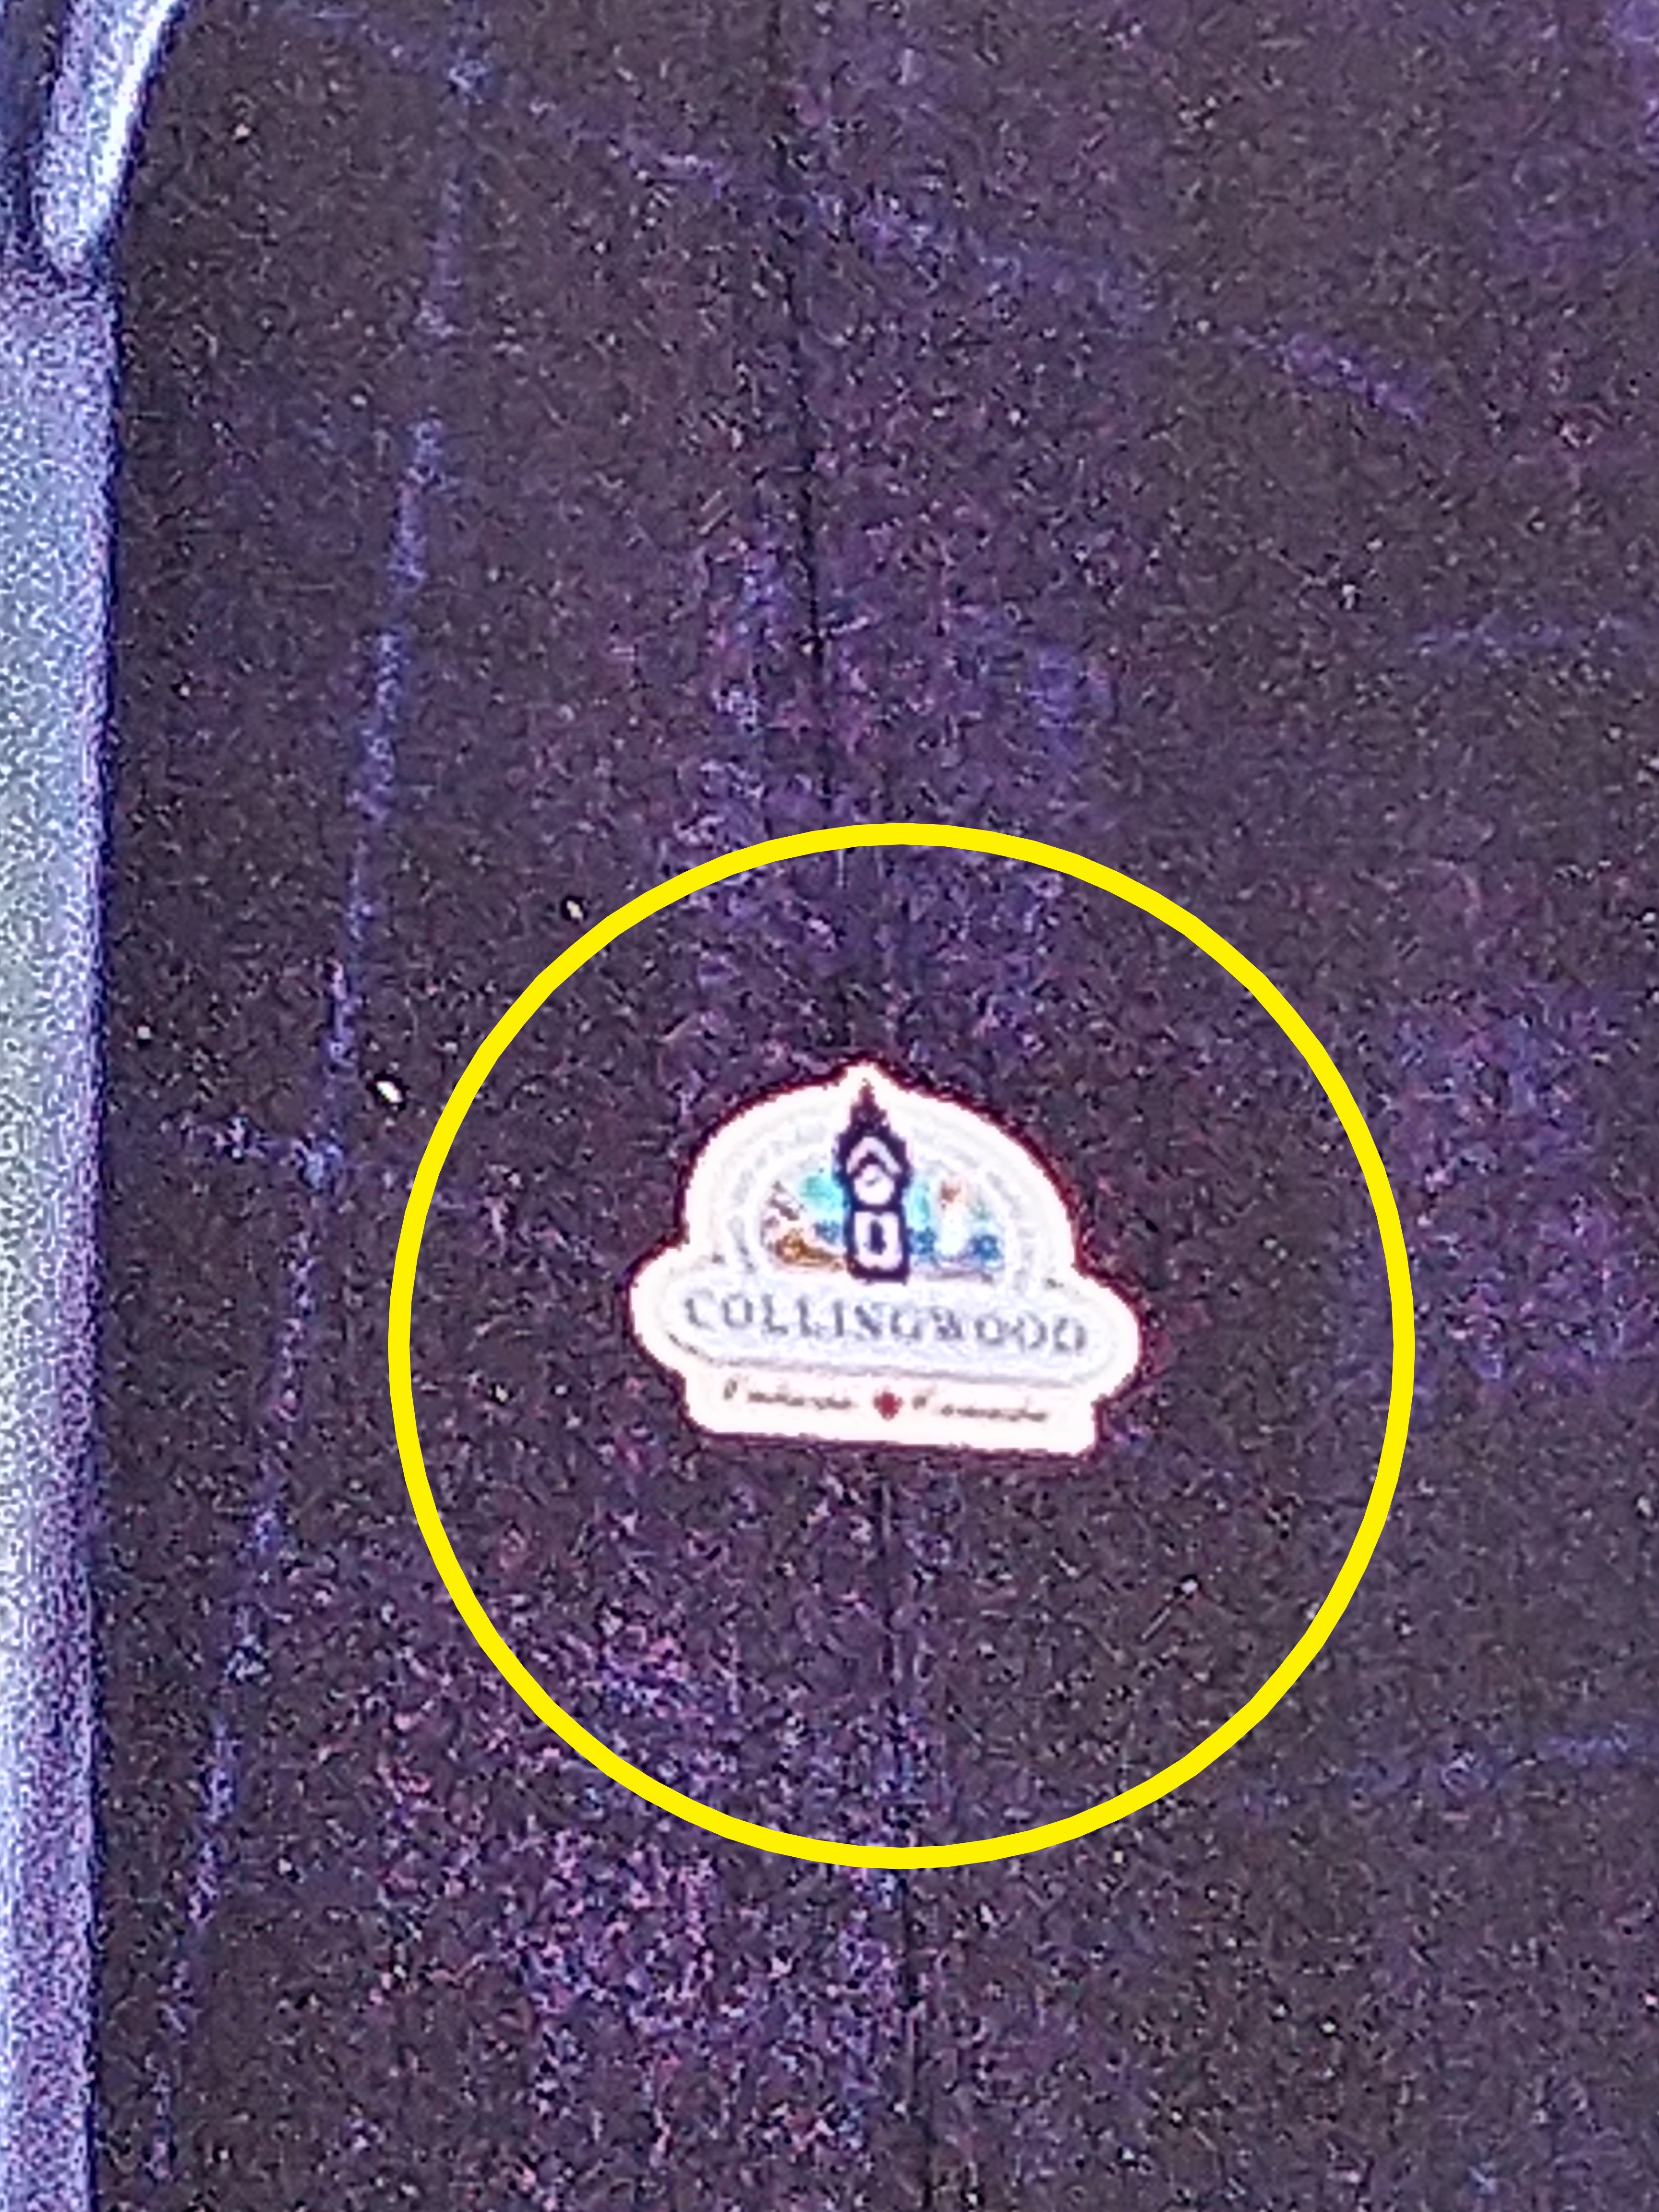 Closeup of Madigan sign with town logo